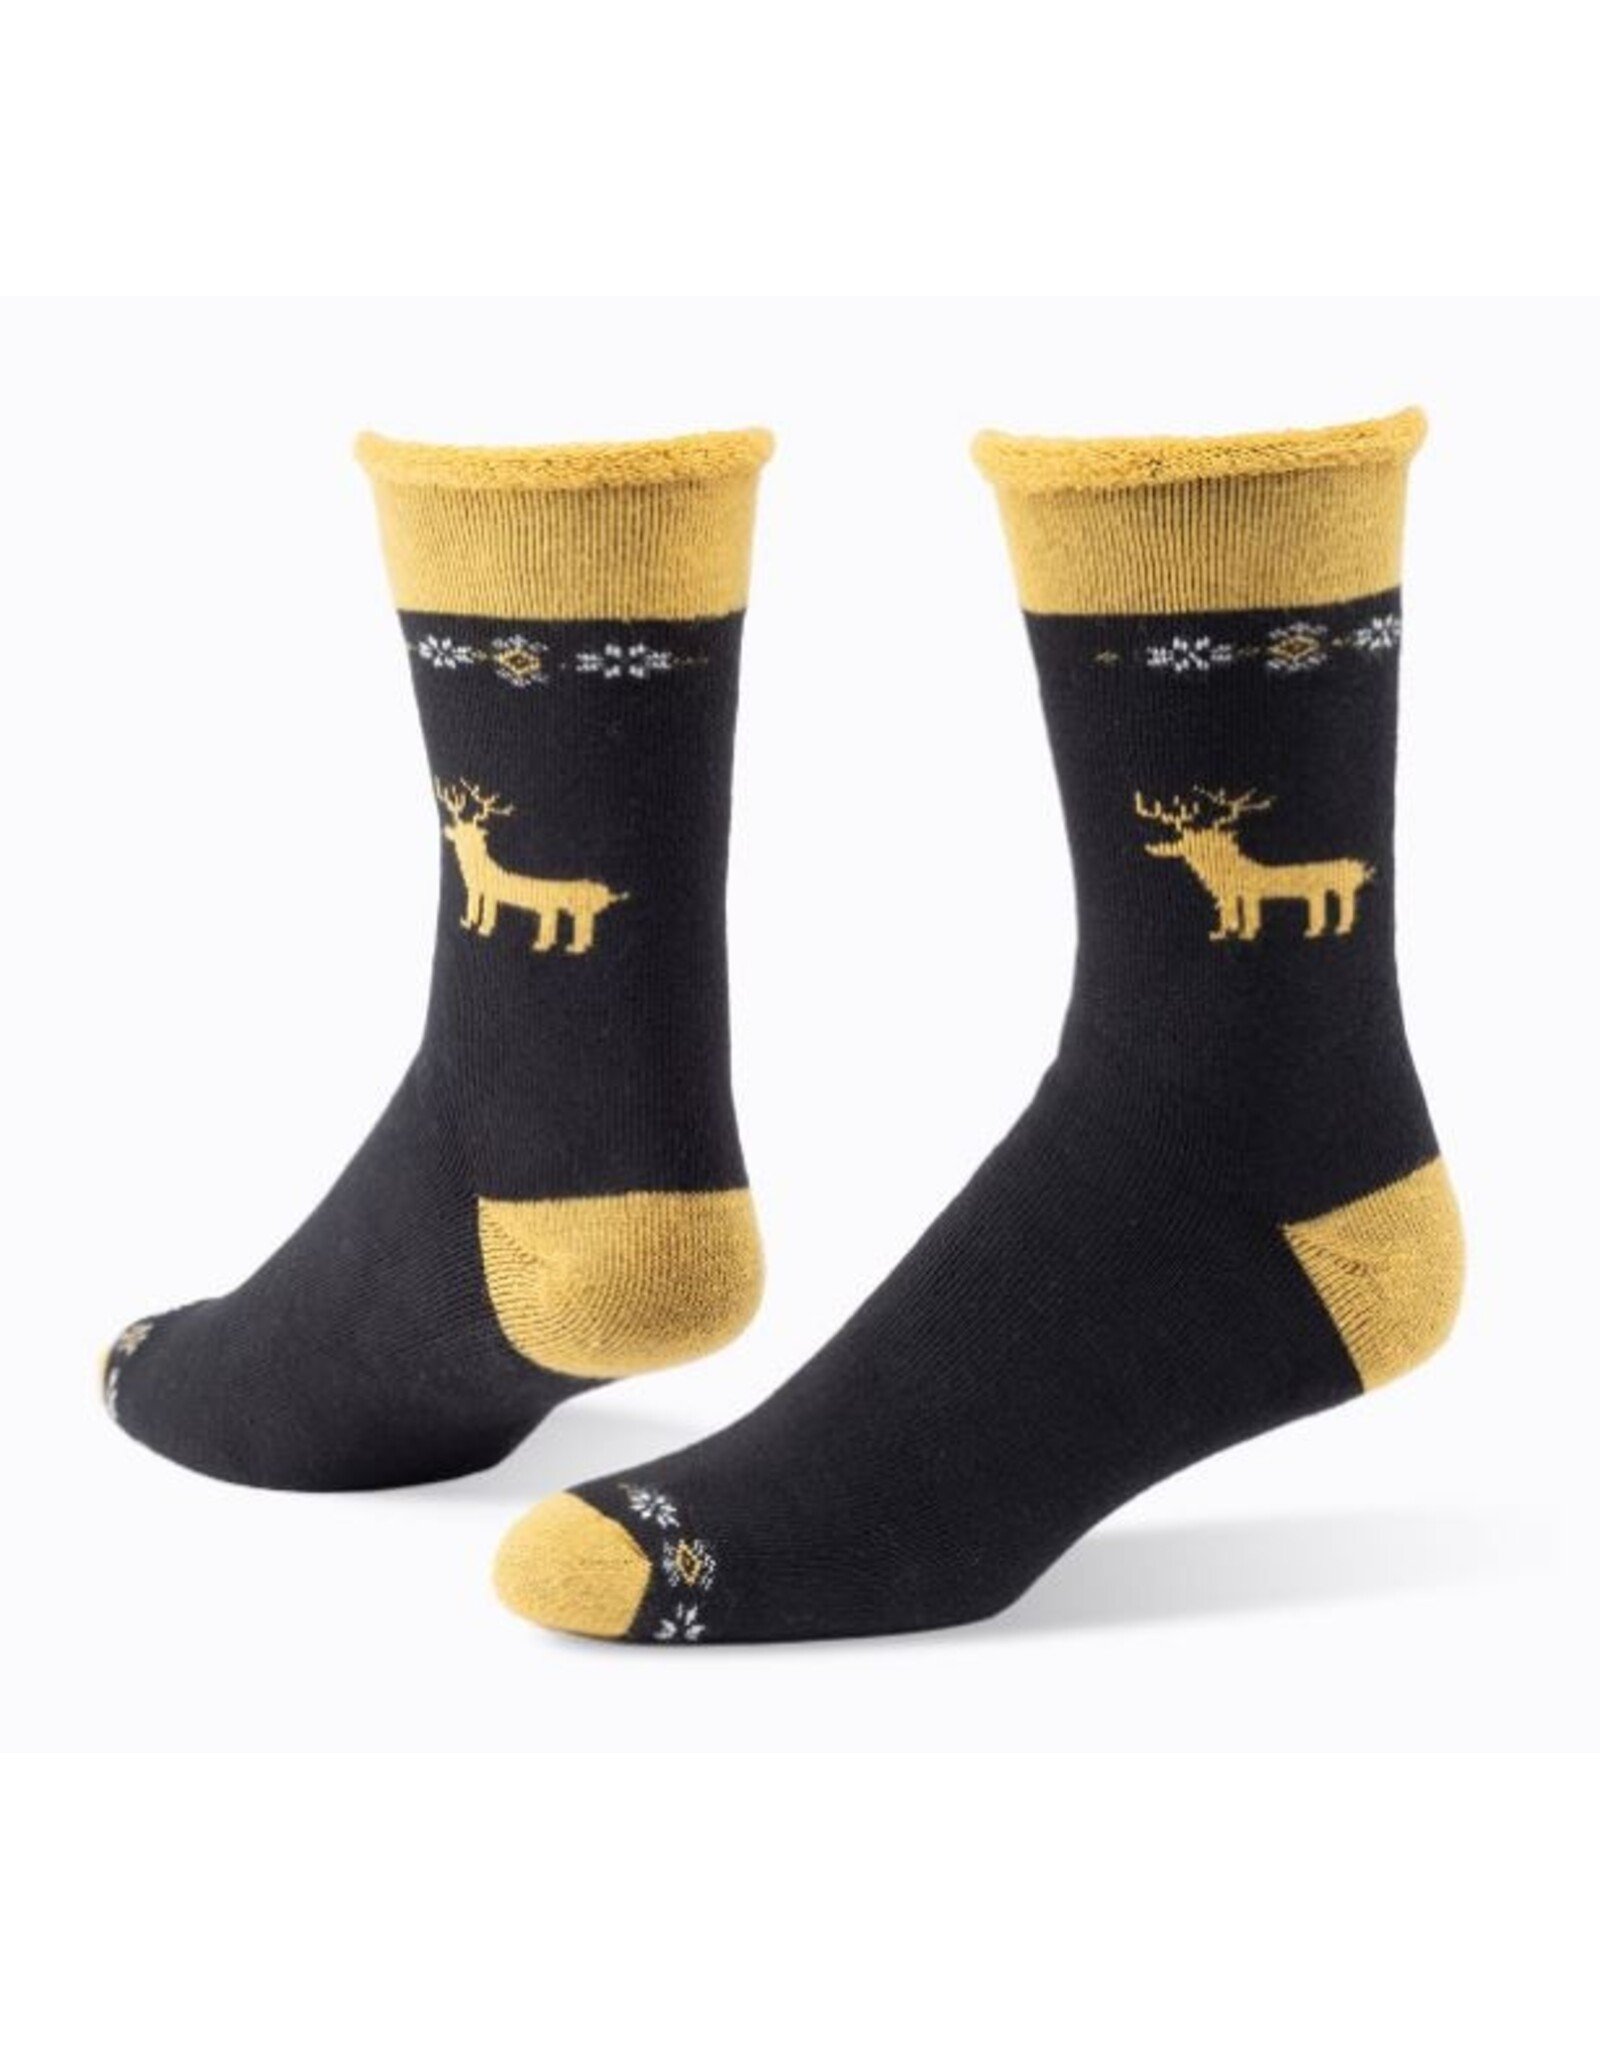 Wool Snuggle Socks - Reindeer/Black - Village Goods